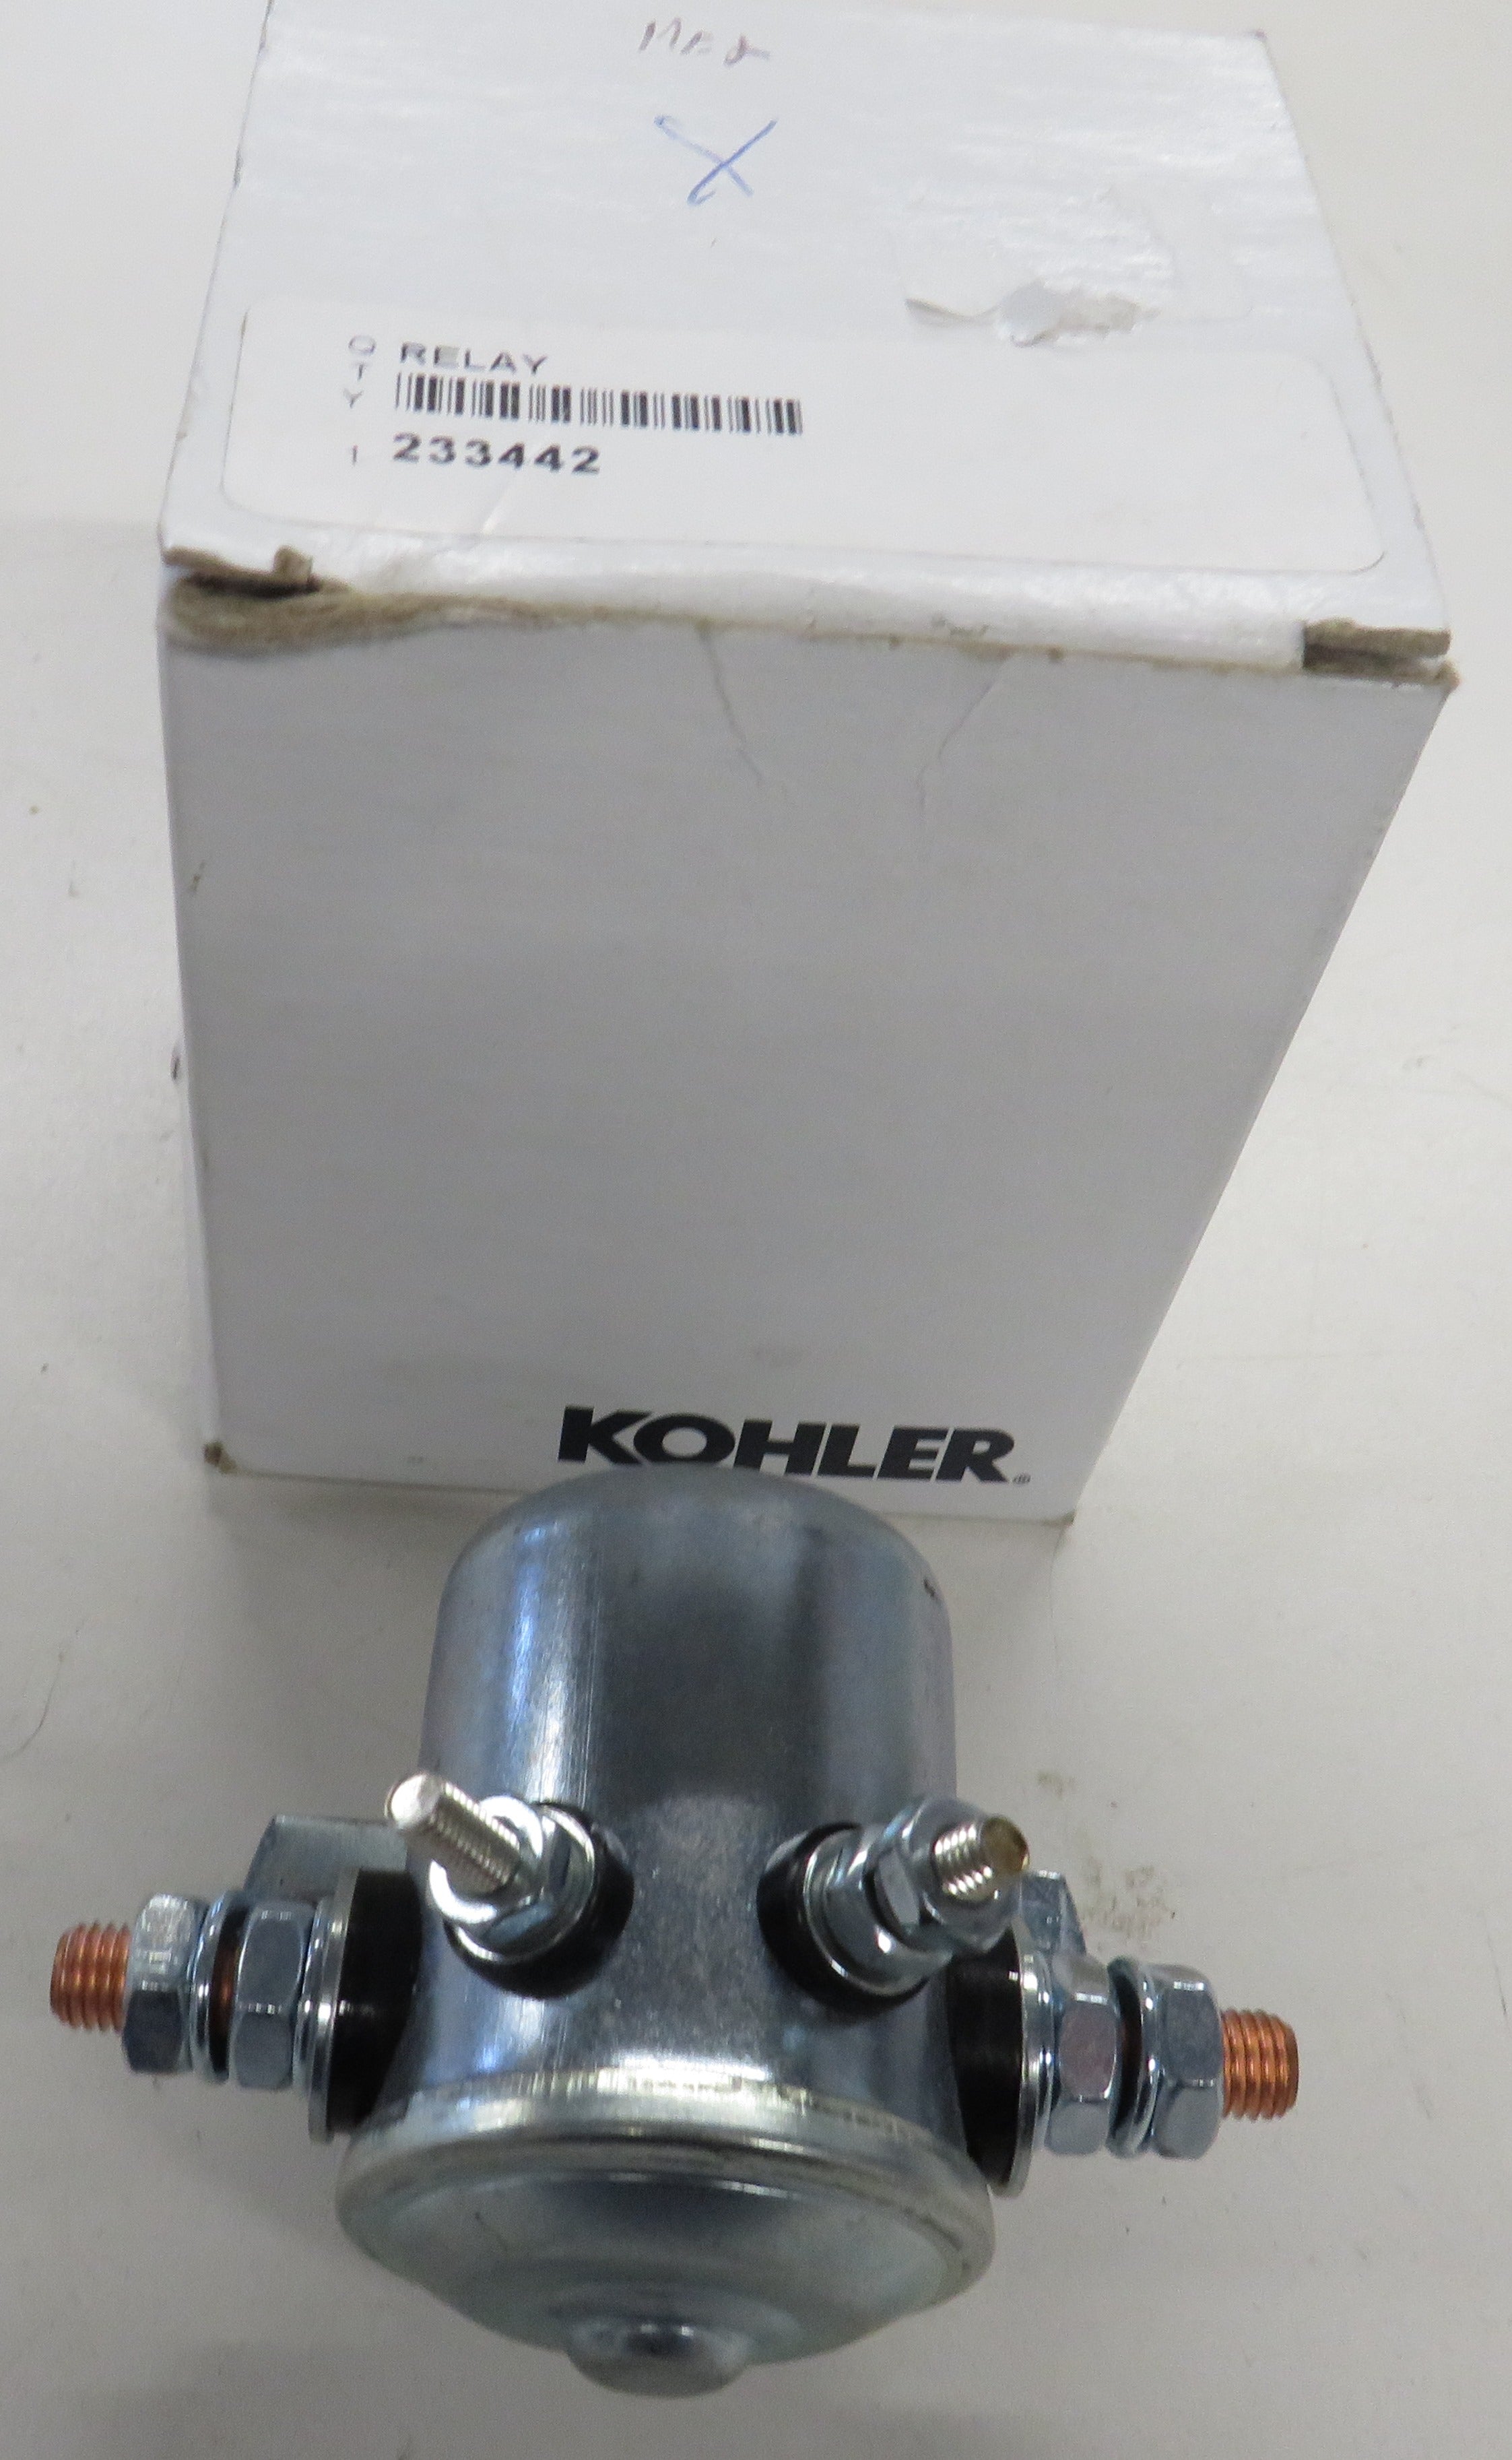 Kohler 233442 Relay, 12VDC